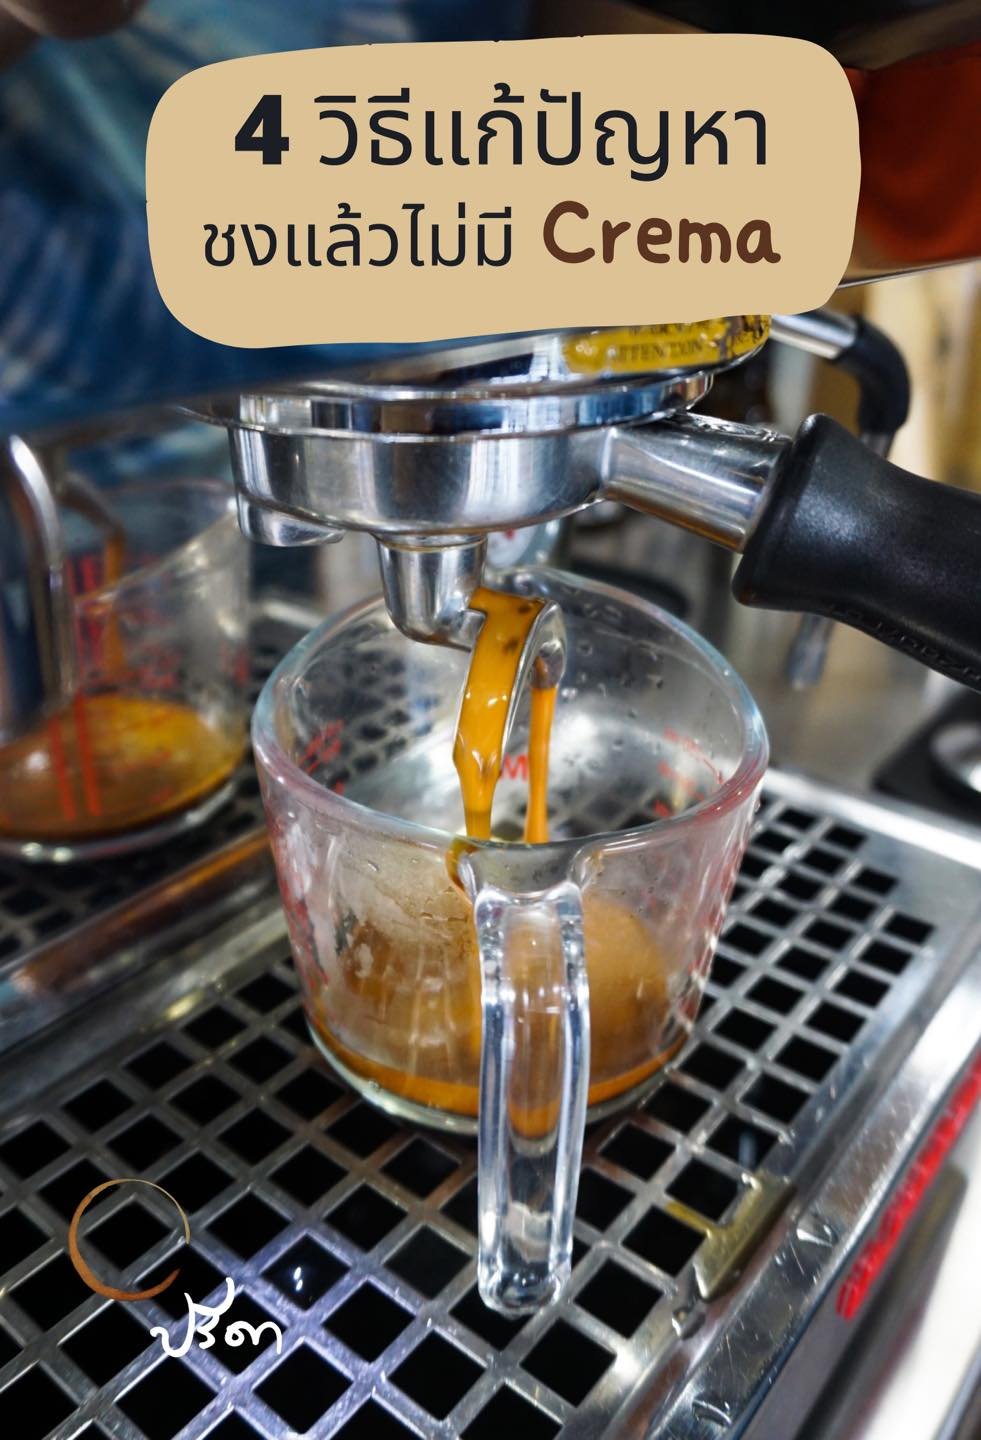 4 วิธีแก้ปัญหา ทำไมชงกาแฟแล้วไม่มีCrema